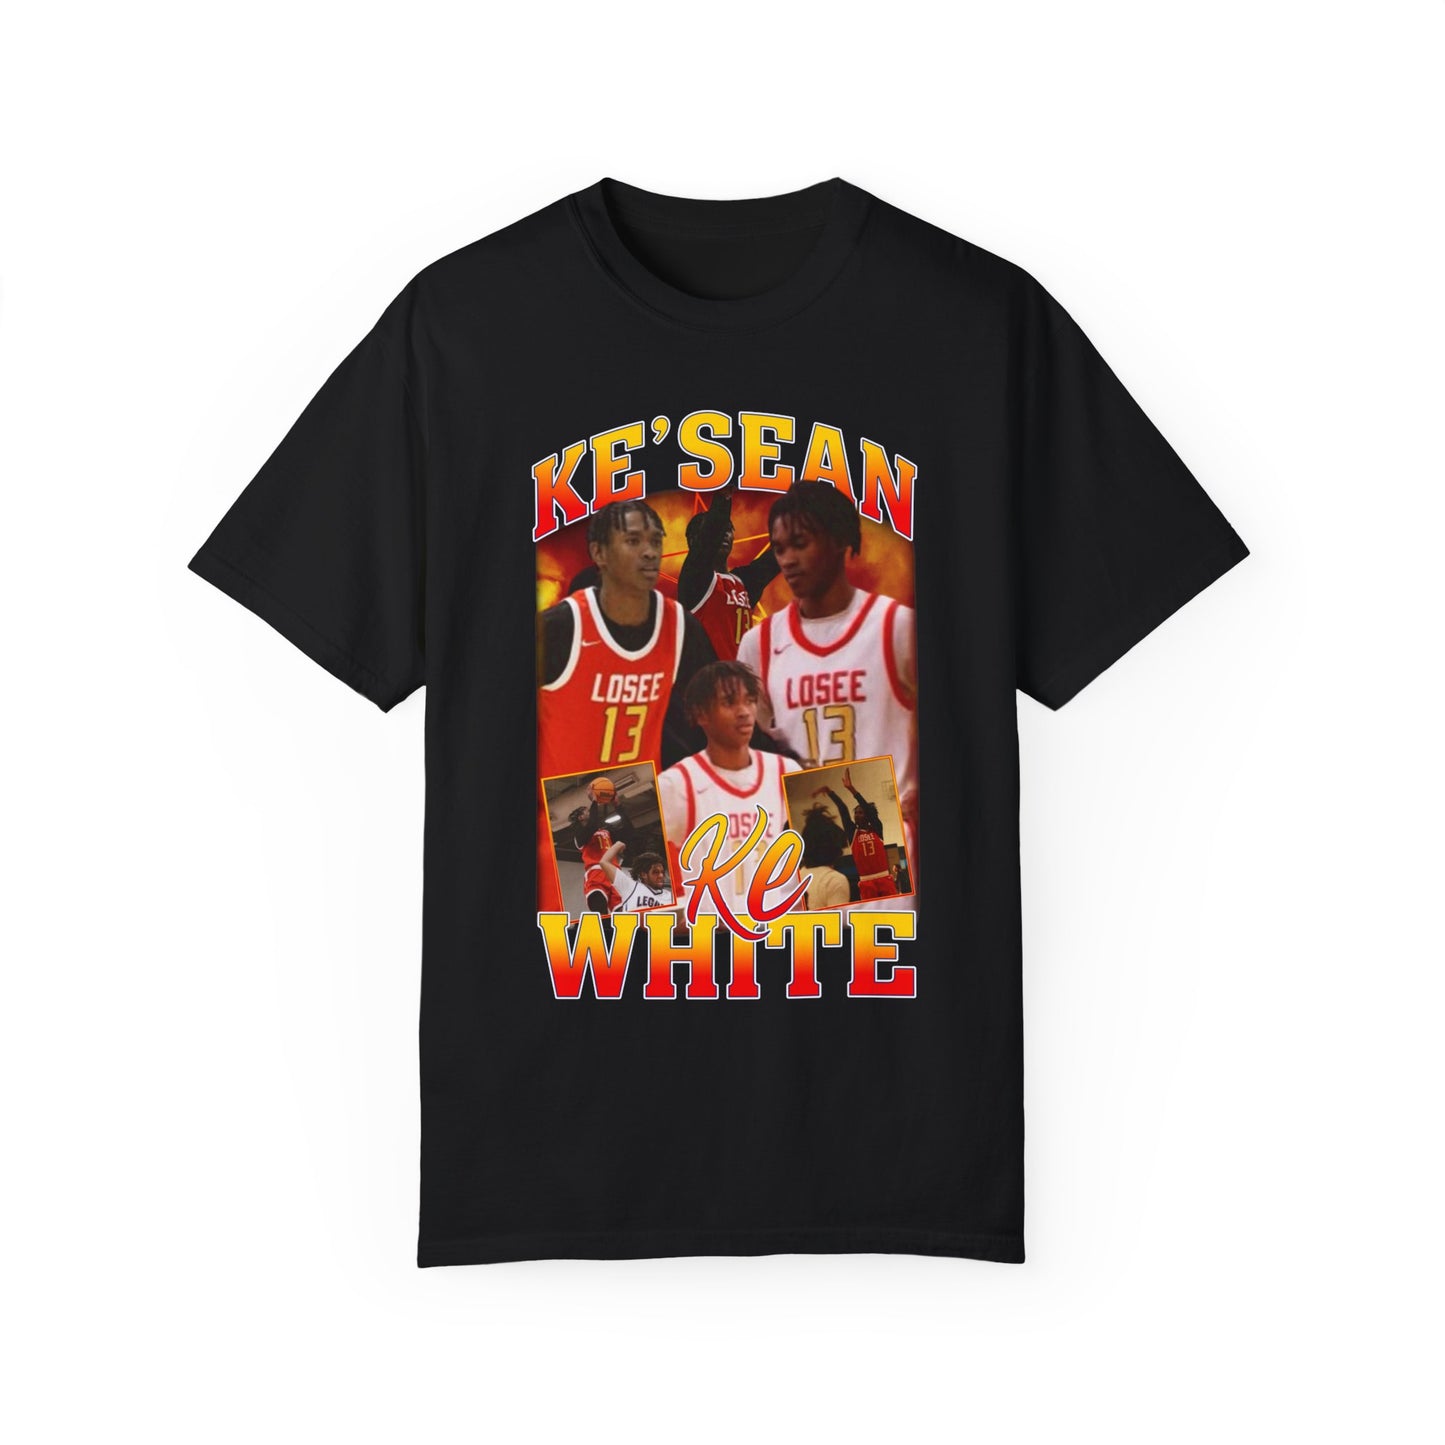 Ke'sean White Graphic T-shirt